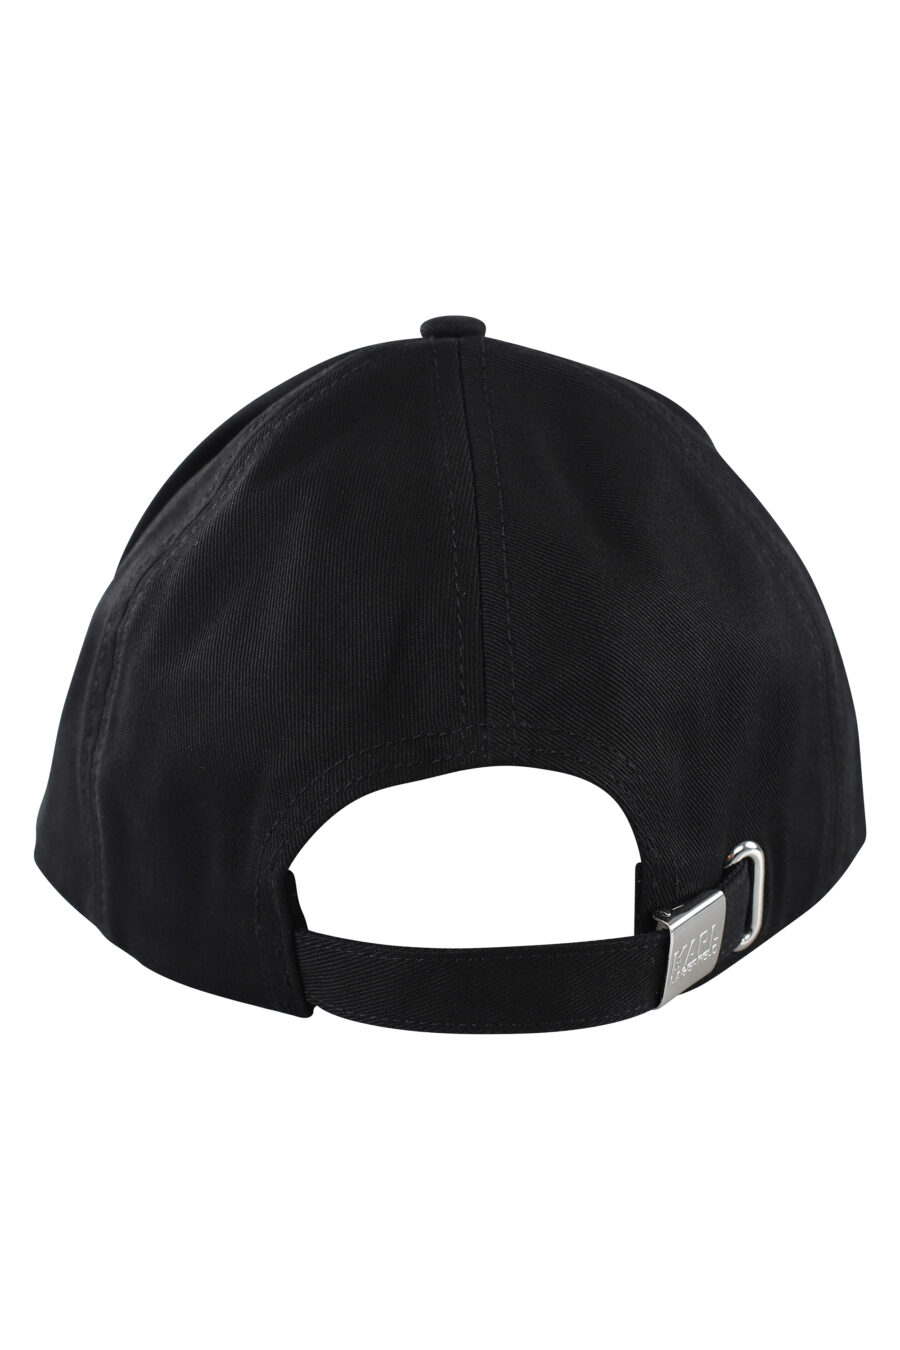 Gorra negra con logo de goma grande - IMG 7076